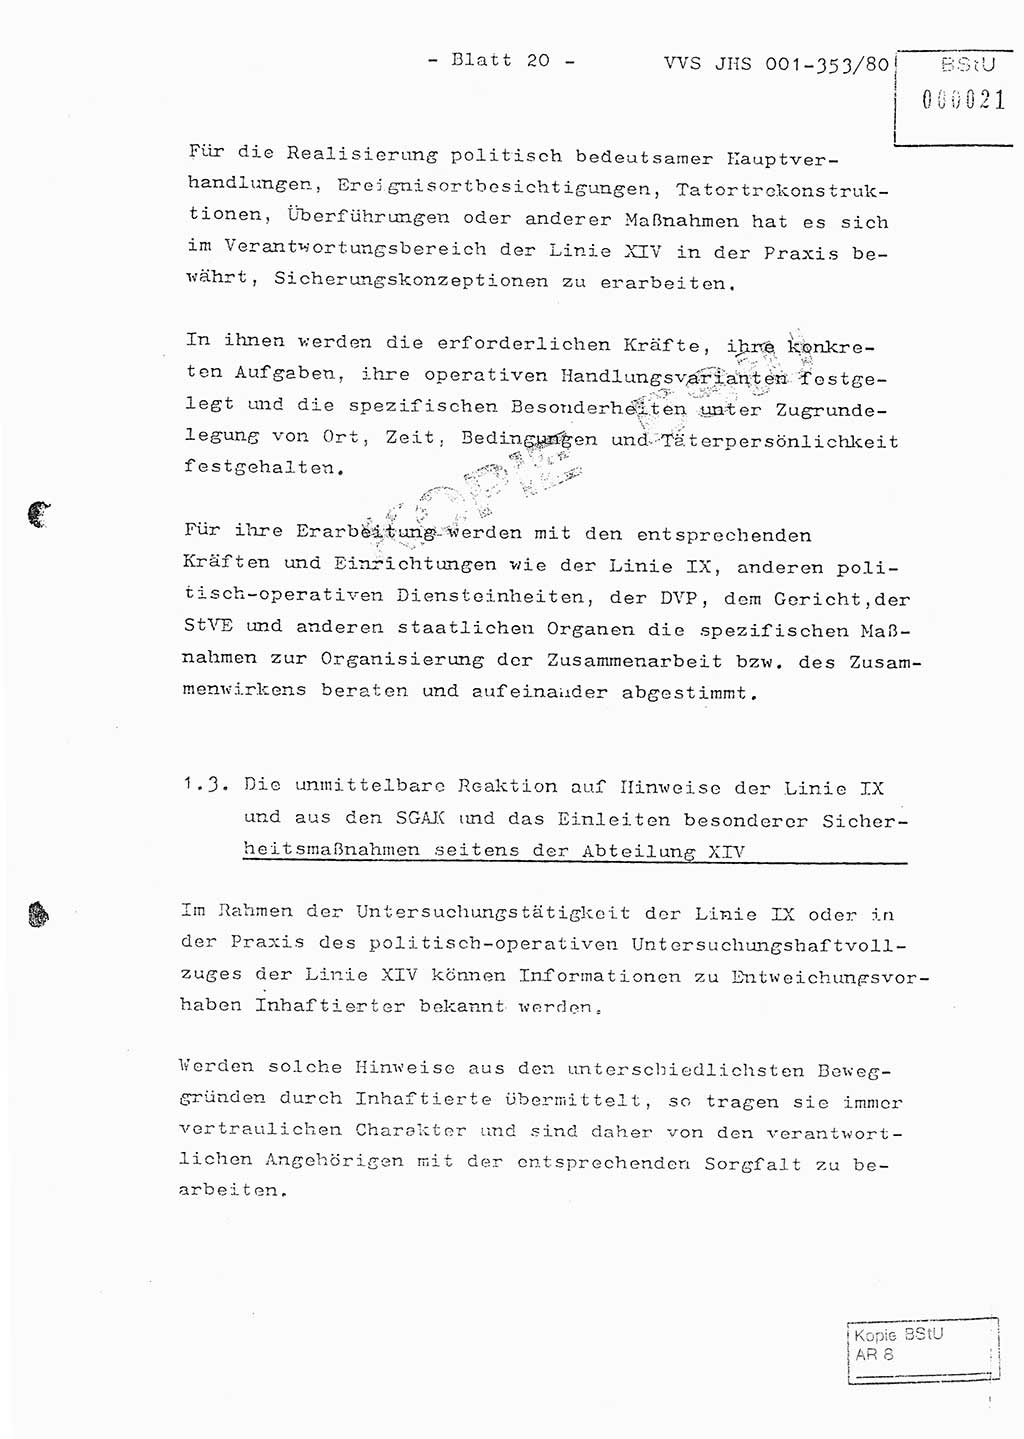 Diplomarbeit Hauptmann Joachim Klaumünzner (Abt. ⅩⅣ), Ministerium für Staatssicherheit (MfS) [Deutsche Demokratische Republik (DDR)], Juristische Hochschule (JHS), Vertrauliche Verschlußsache (VVS) o001-353/80, Potsdam 1980, Blatt 20 (Dipl.-Arb. MfS DDR JHS VVS o001-353/80 1980, Bl. 20)